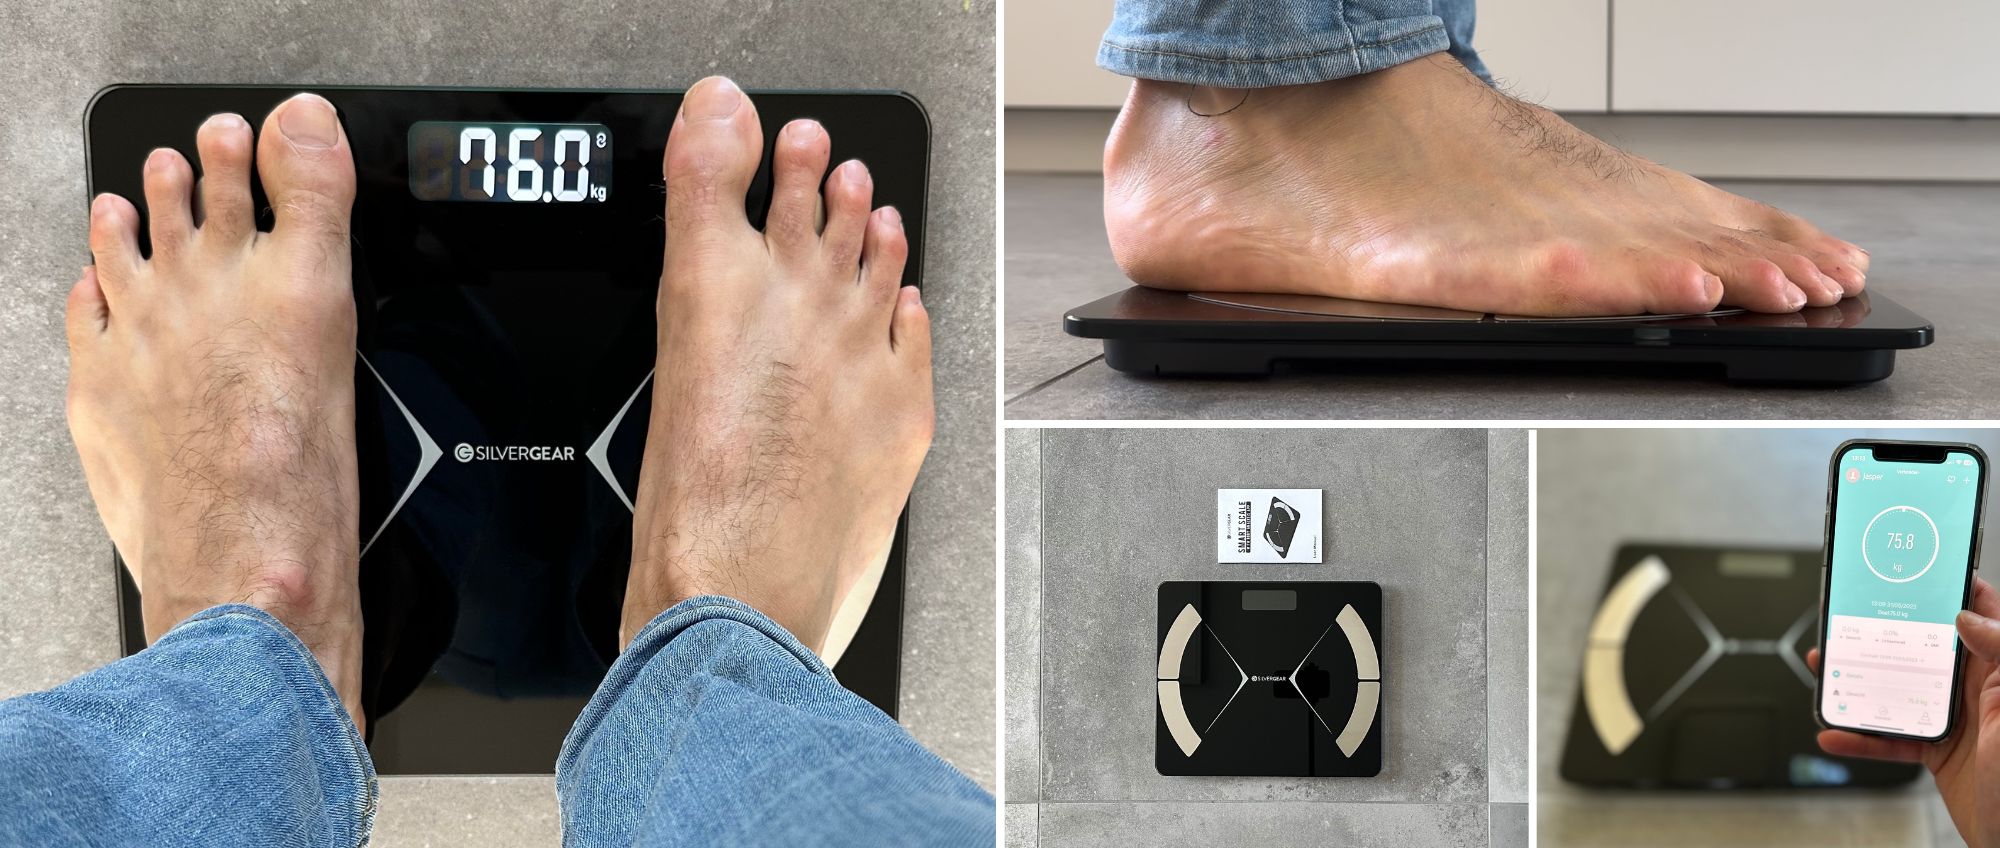 De voeten van een persoon worden weergegeven op een digitale weegschaal.